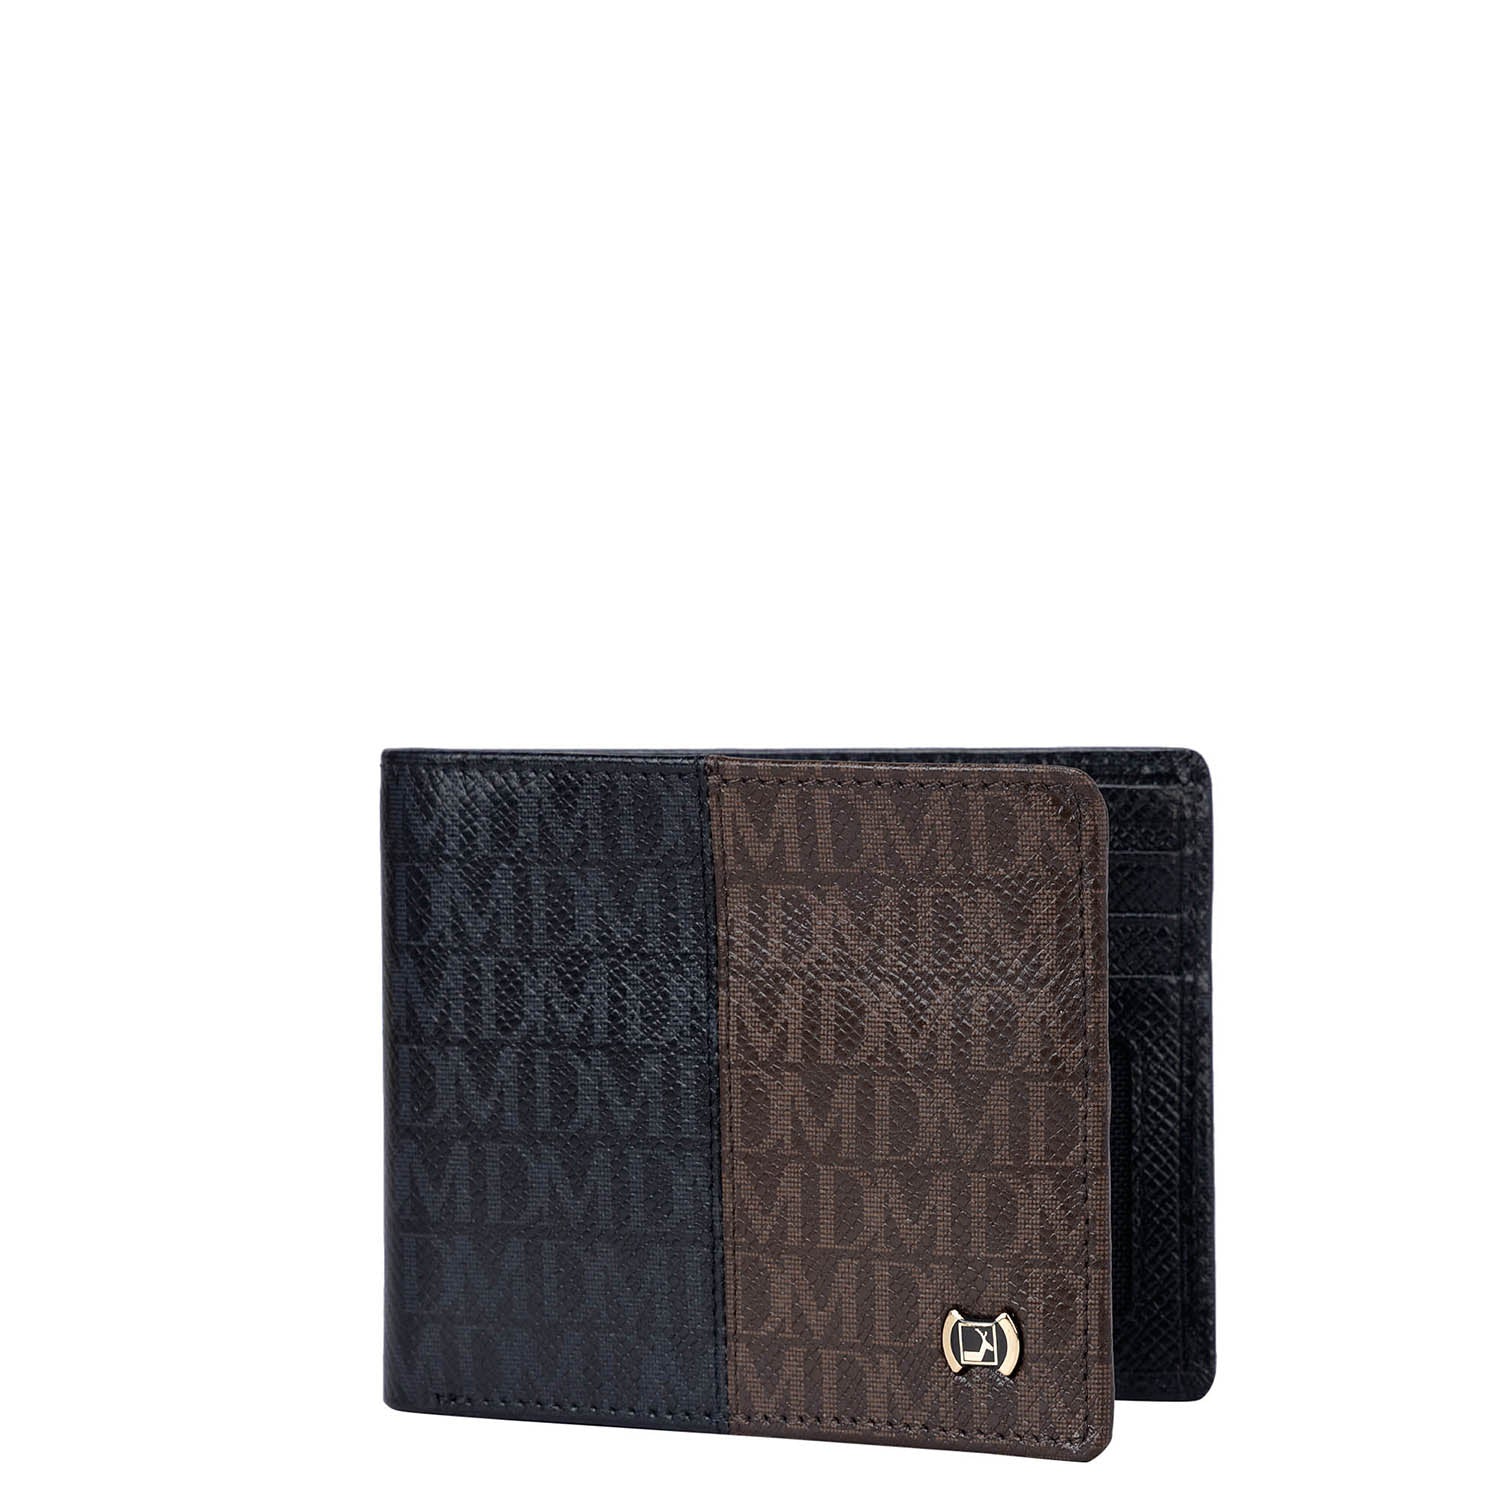 Buy Louis Vuitton Monogram Compact Wallet Online in India 